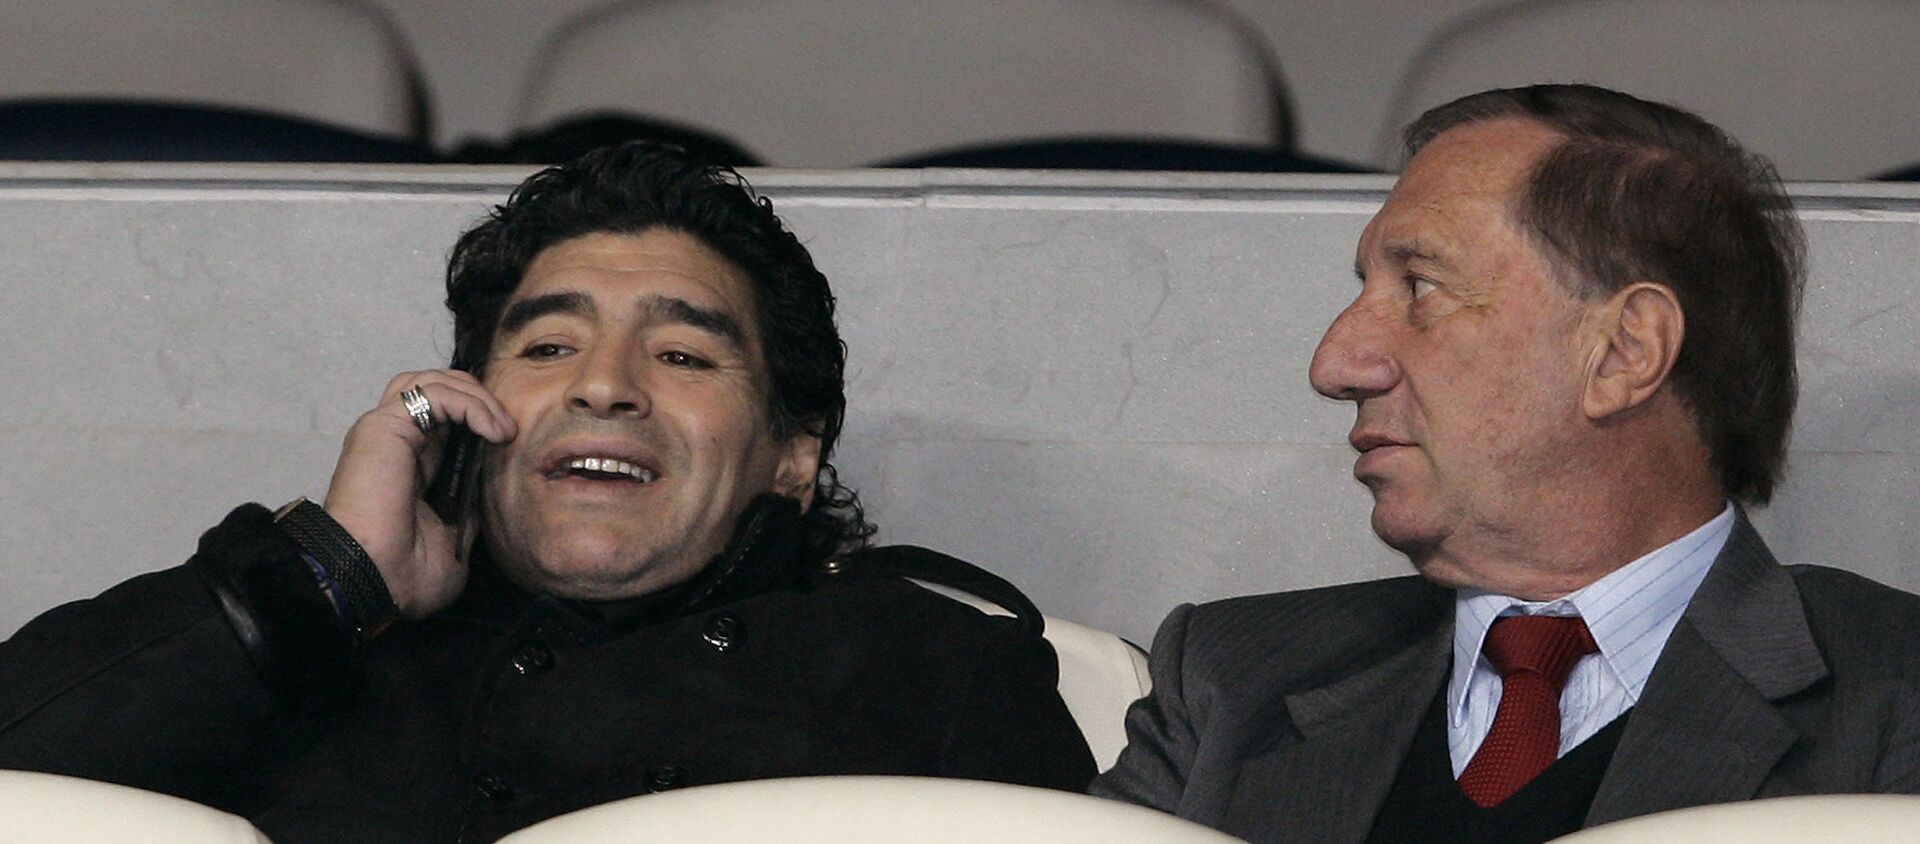 Diego Maradona junto a Carlos Bilardo juntos en un estadio en 2008 - Sputnik Mundo, 1920, 04.12.2020